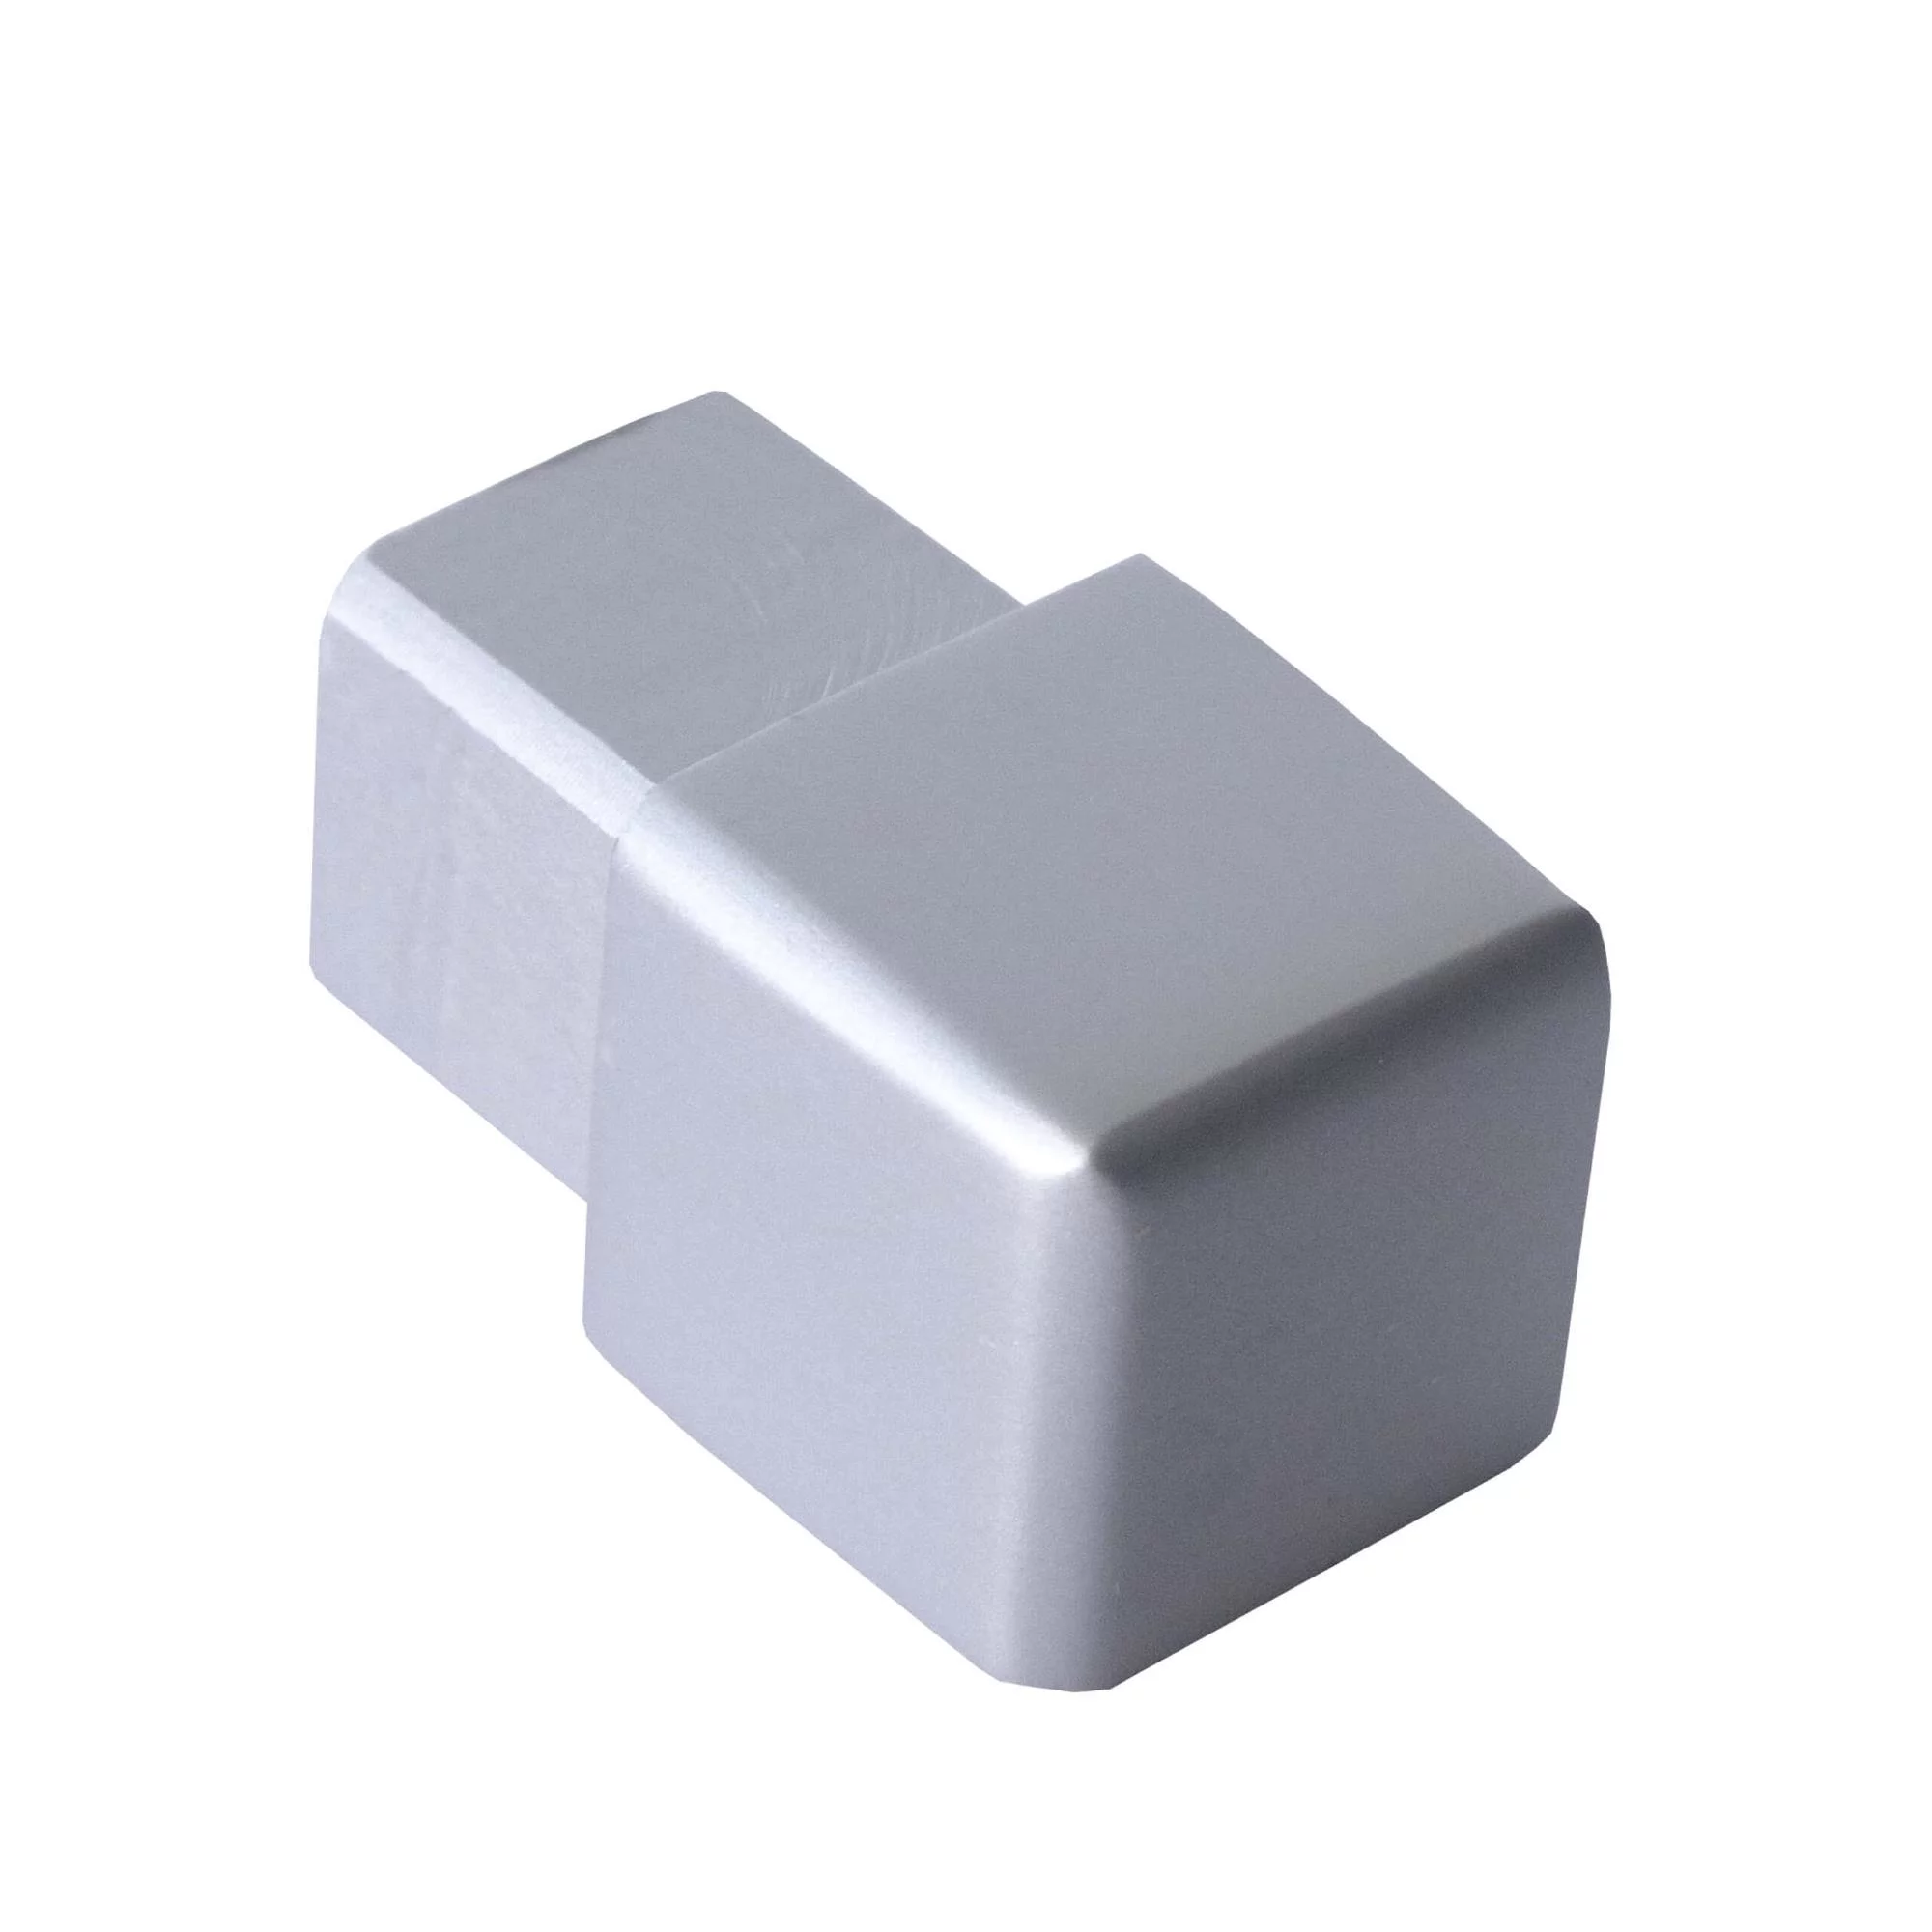 endstueck-quadratprofil-alu-(eloxiert)-hoehe-12.5mm.-1-stueck-silber-matt